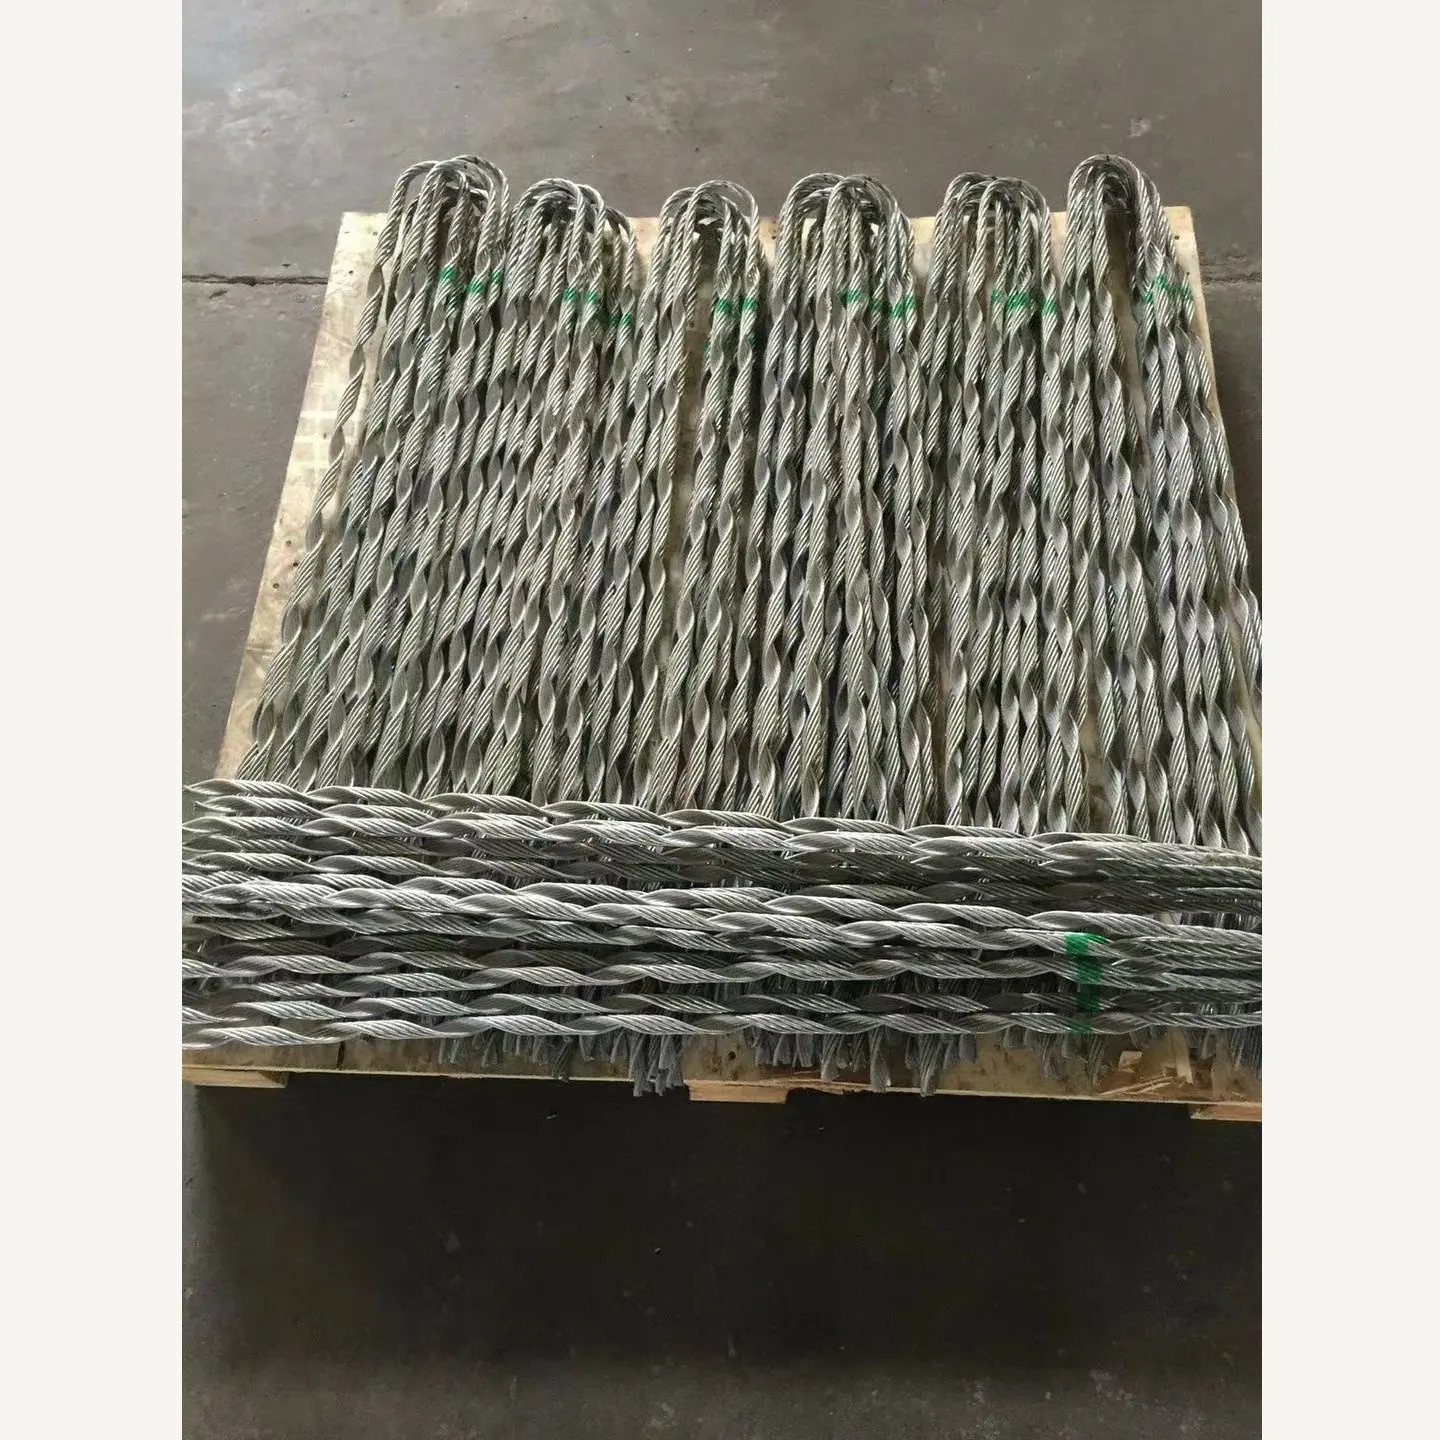 Китайский поставщик, фитинги для оптических кабелей, материал, оцинкованная сталь, выполненные мертвые ручки